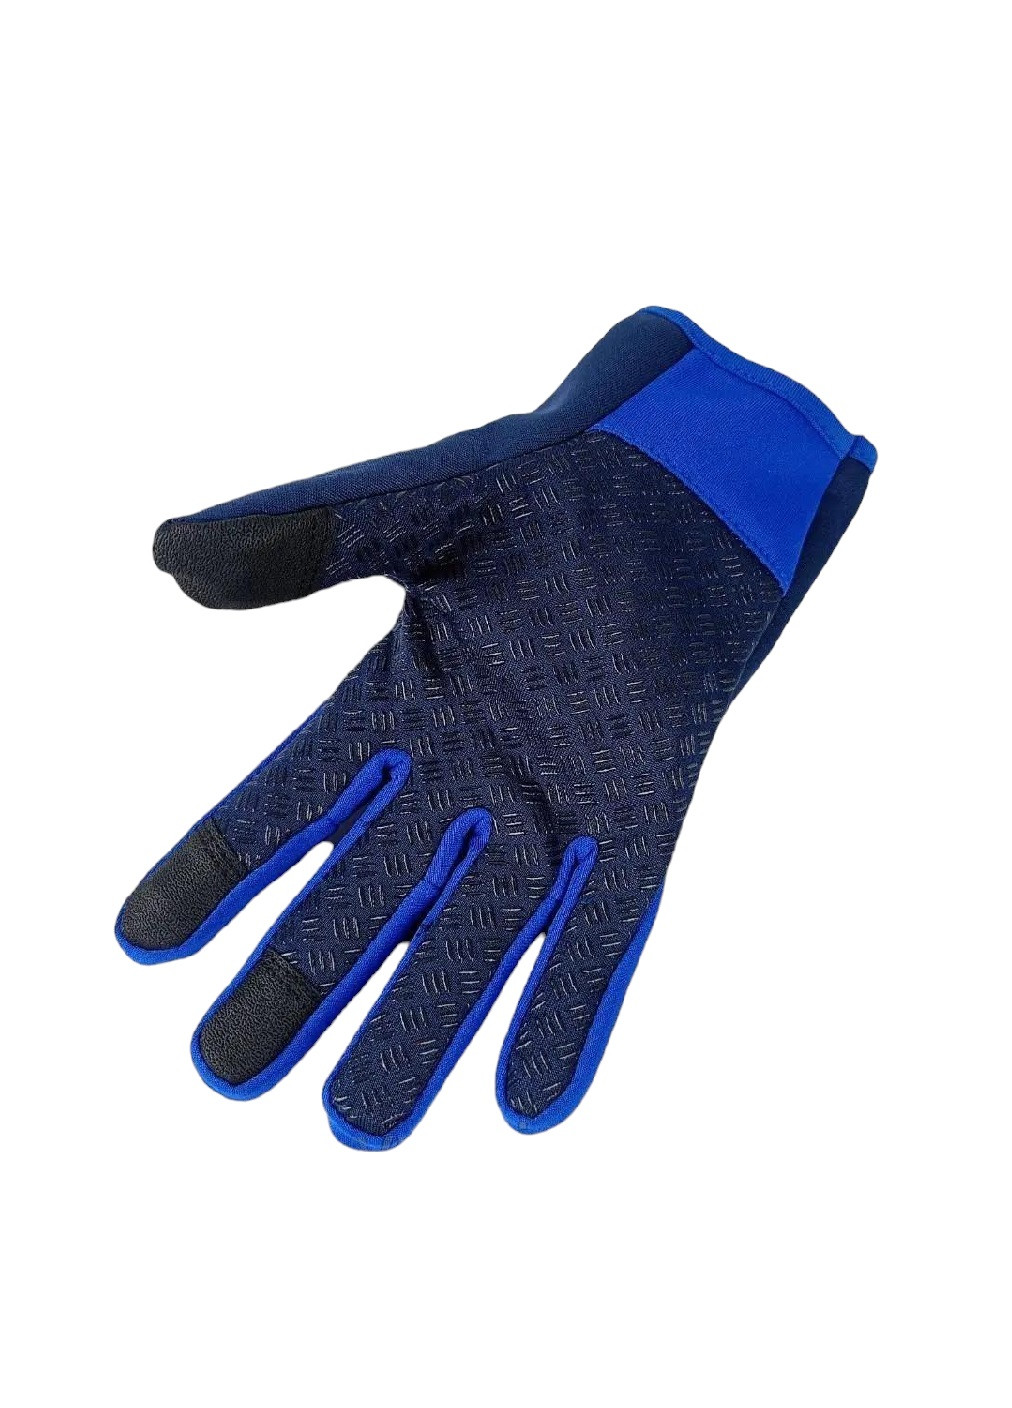 Велоперчатки велосипедные перчатки с водоотталкивающим сенсорным покрытием спандекс флис (476034-Prob) Синие L Unbranded (275863535)